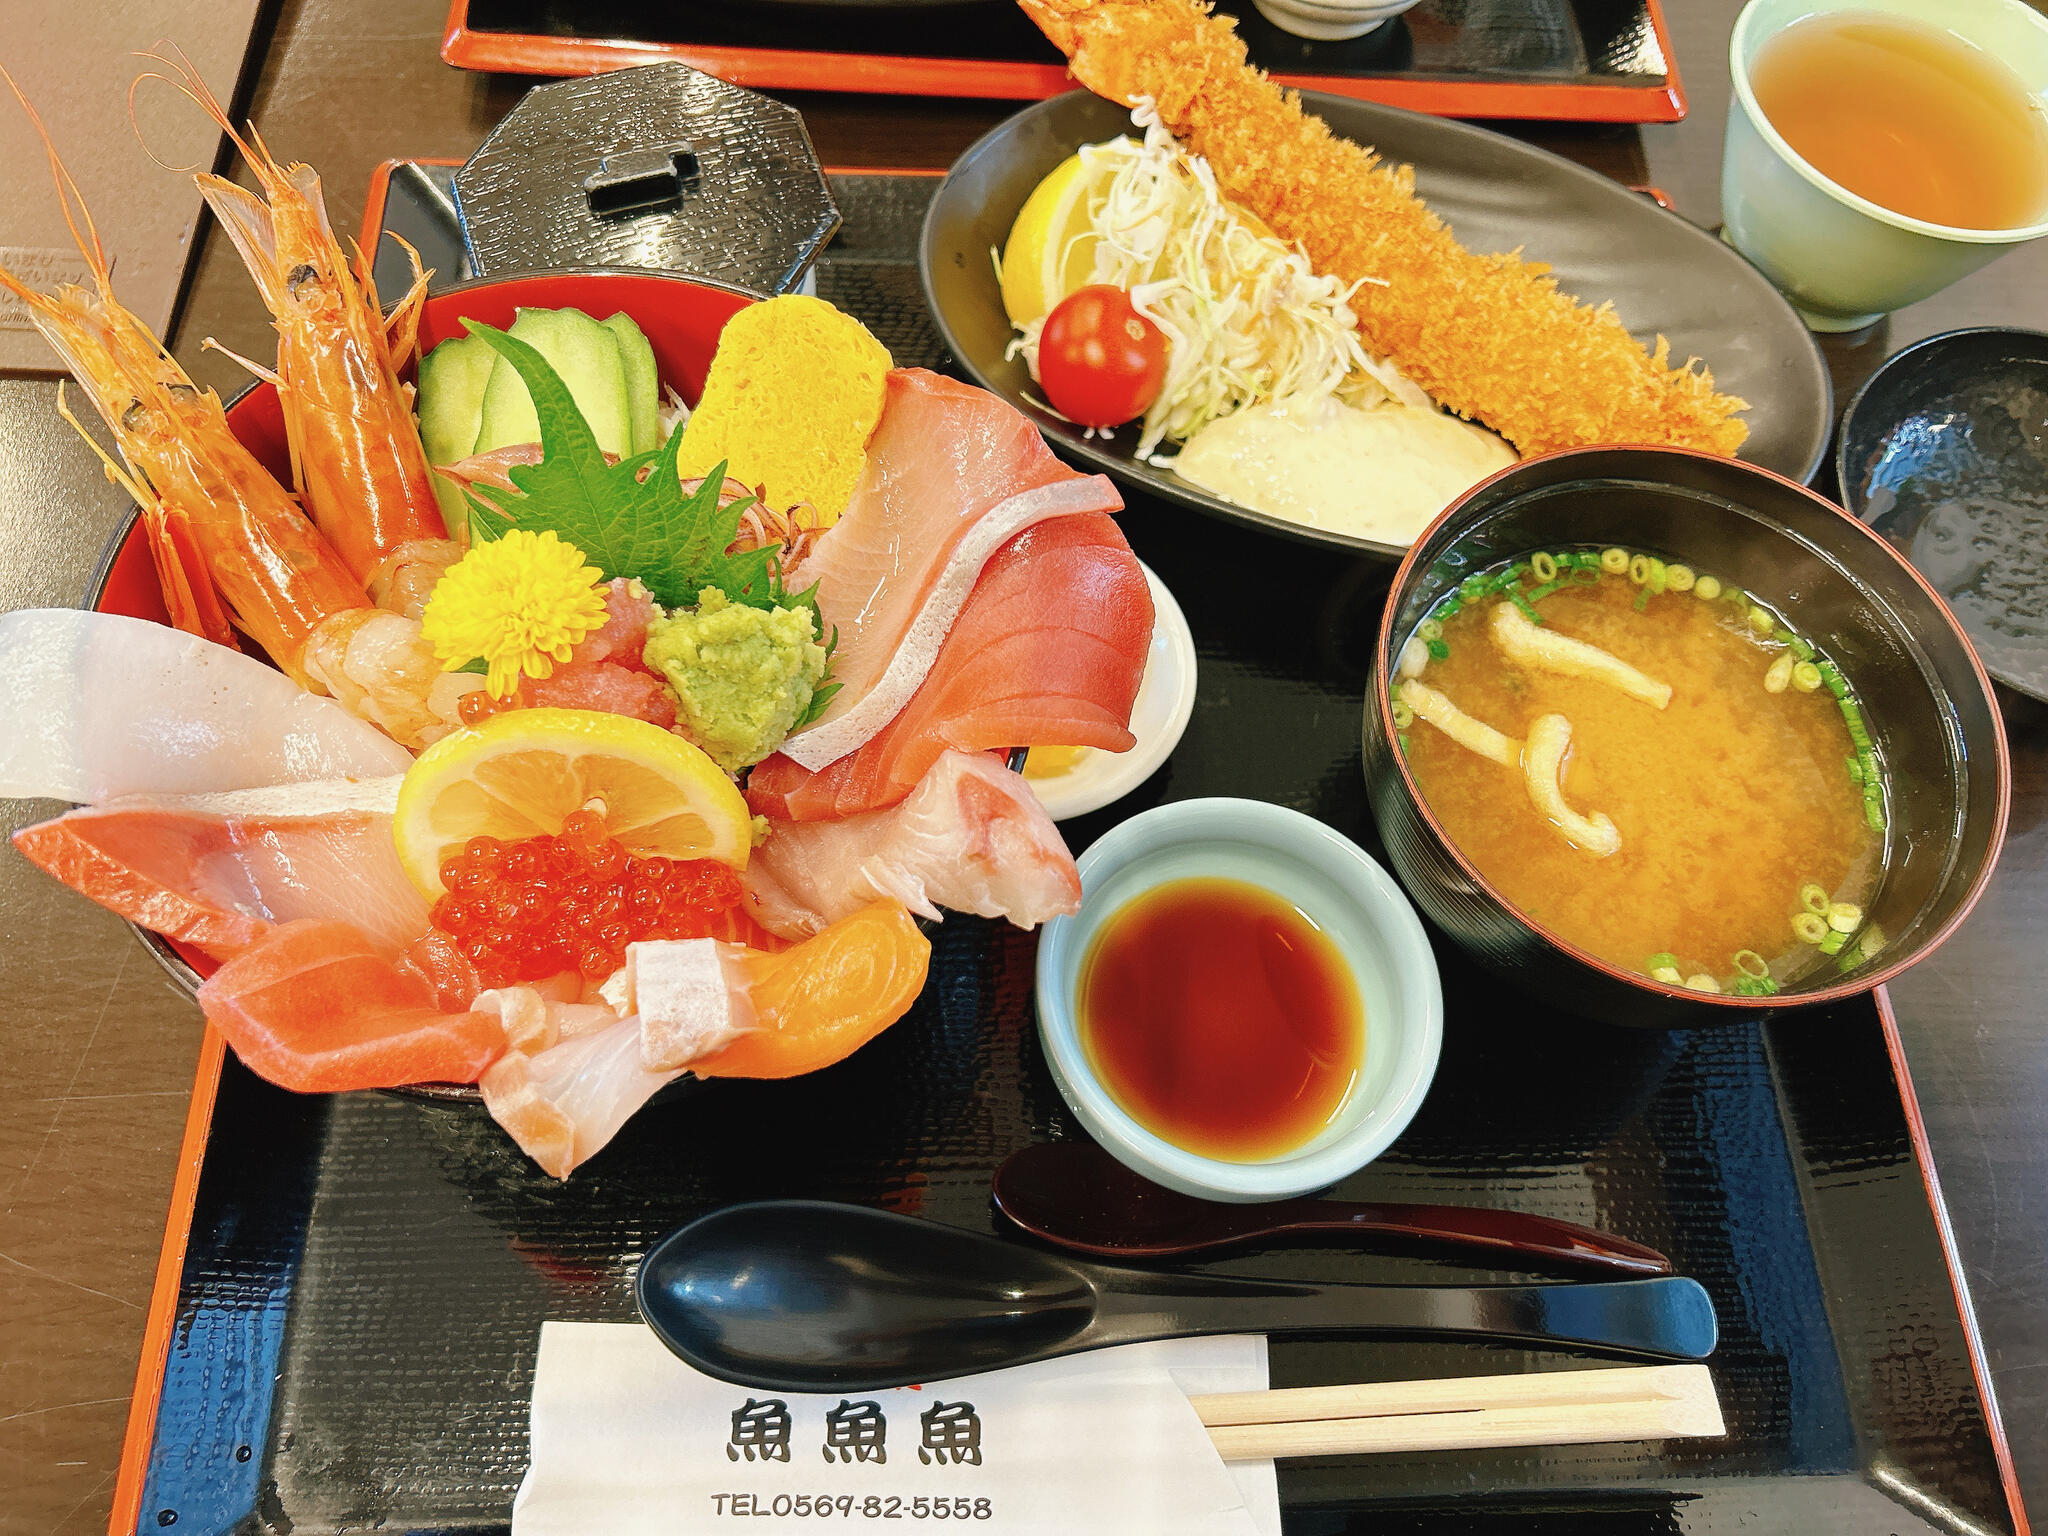 魚魚魚 - 知多郡美浜町大字豊丘/シーフード・海鮮料理店 | Yahoo!マップ